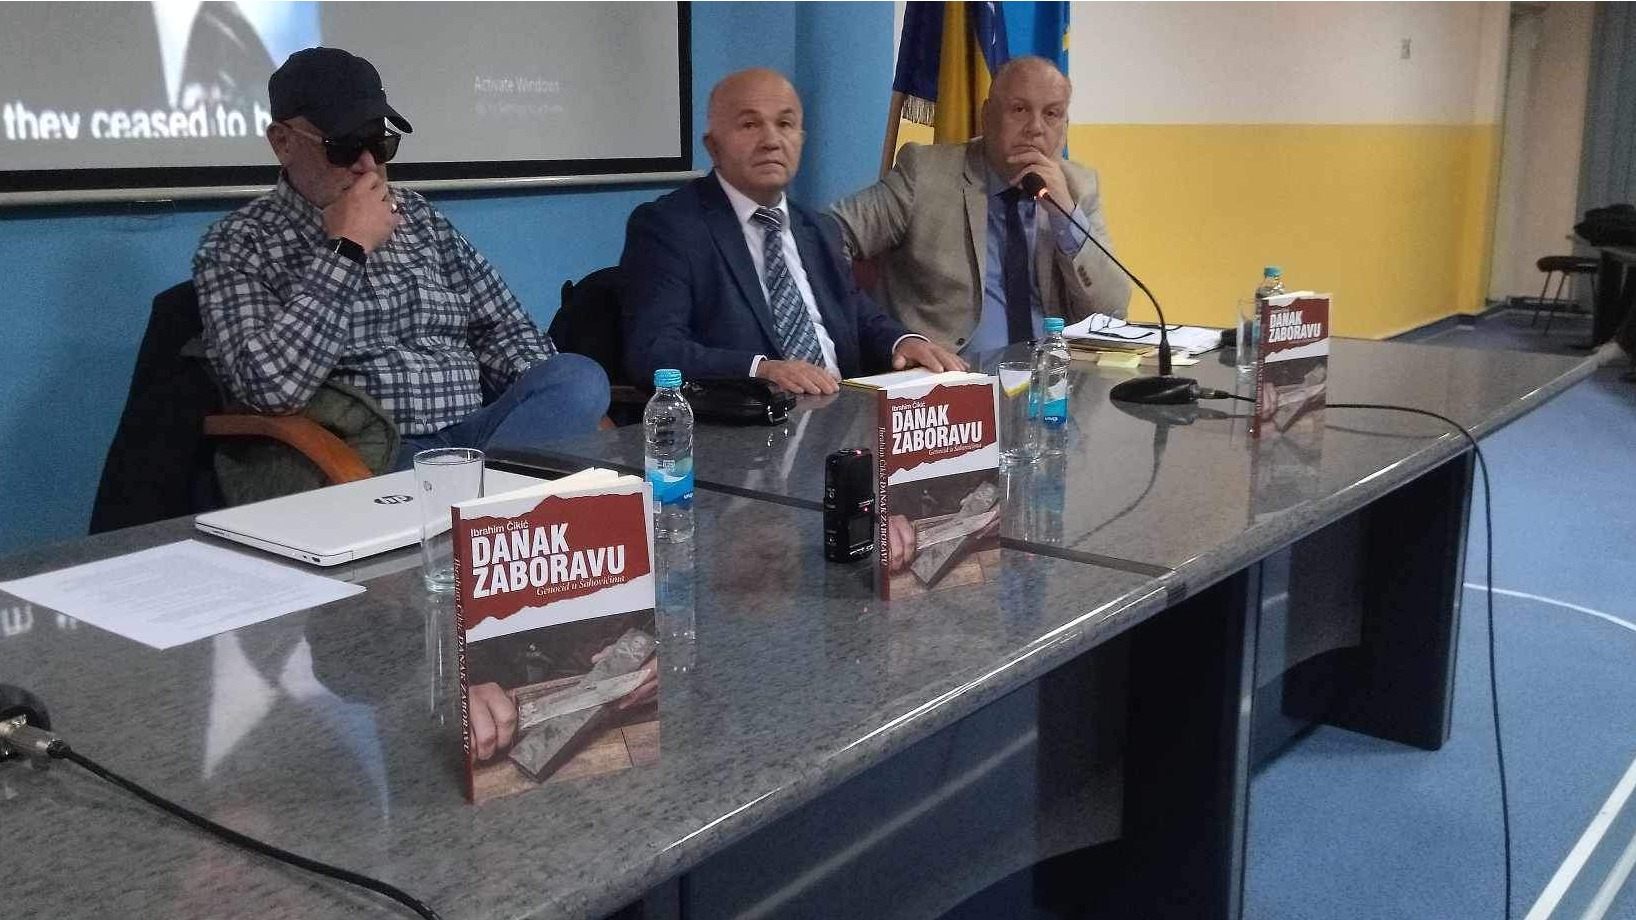 U Tuzli promovisana knjiga "Danak zaboravu - Genocid u Šahovićima", autora Ibrahima Čikića